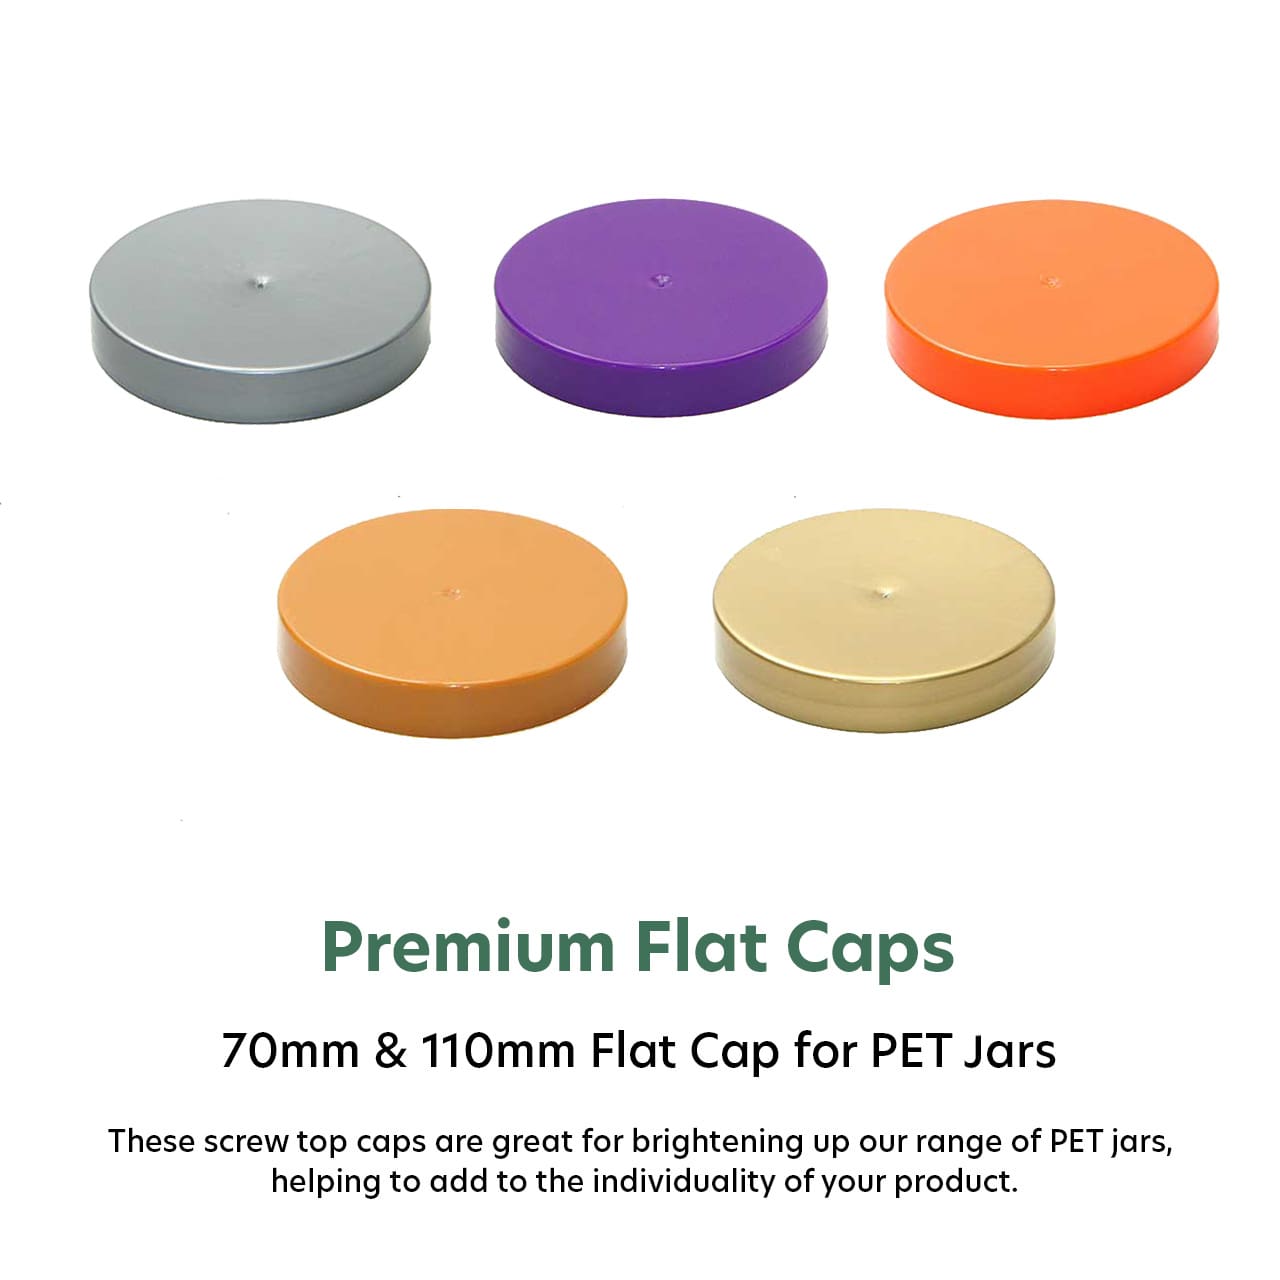 Premium Flat Caps for PET Jars